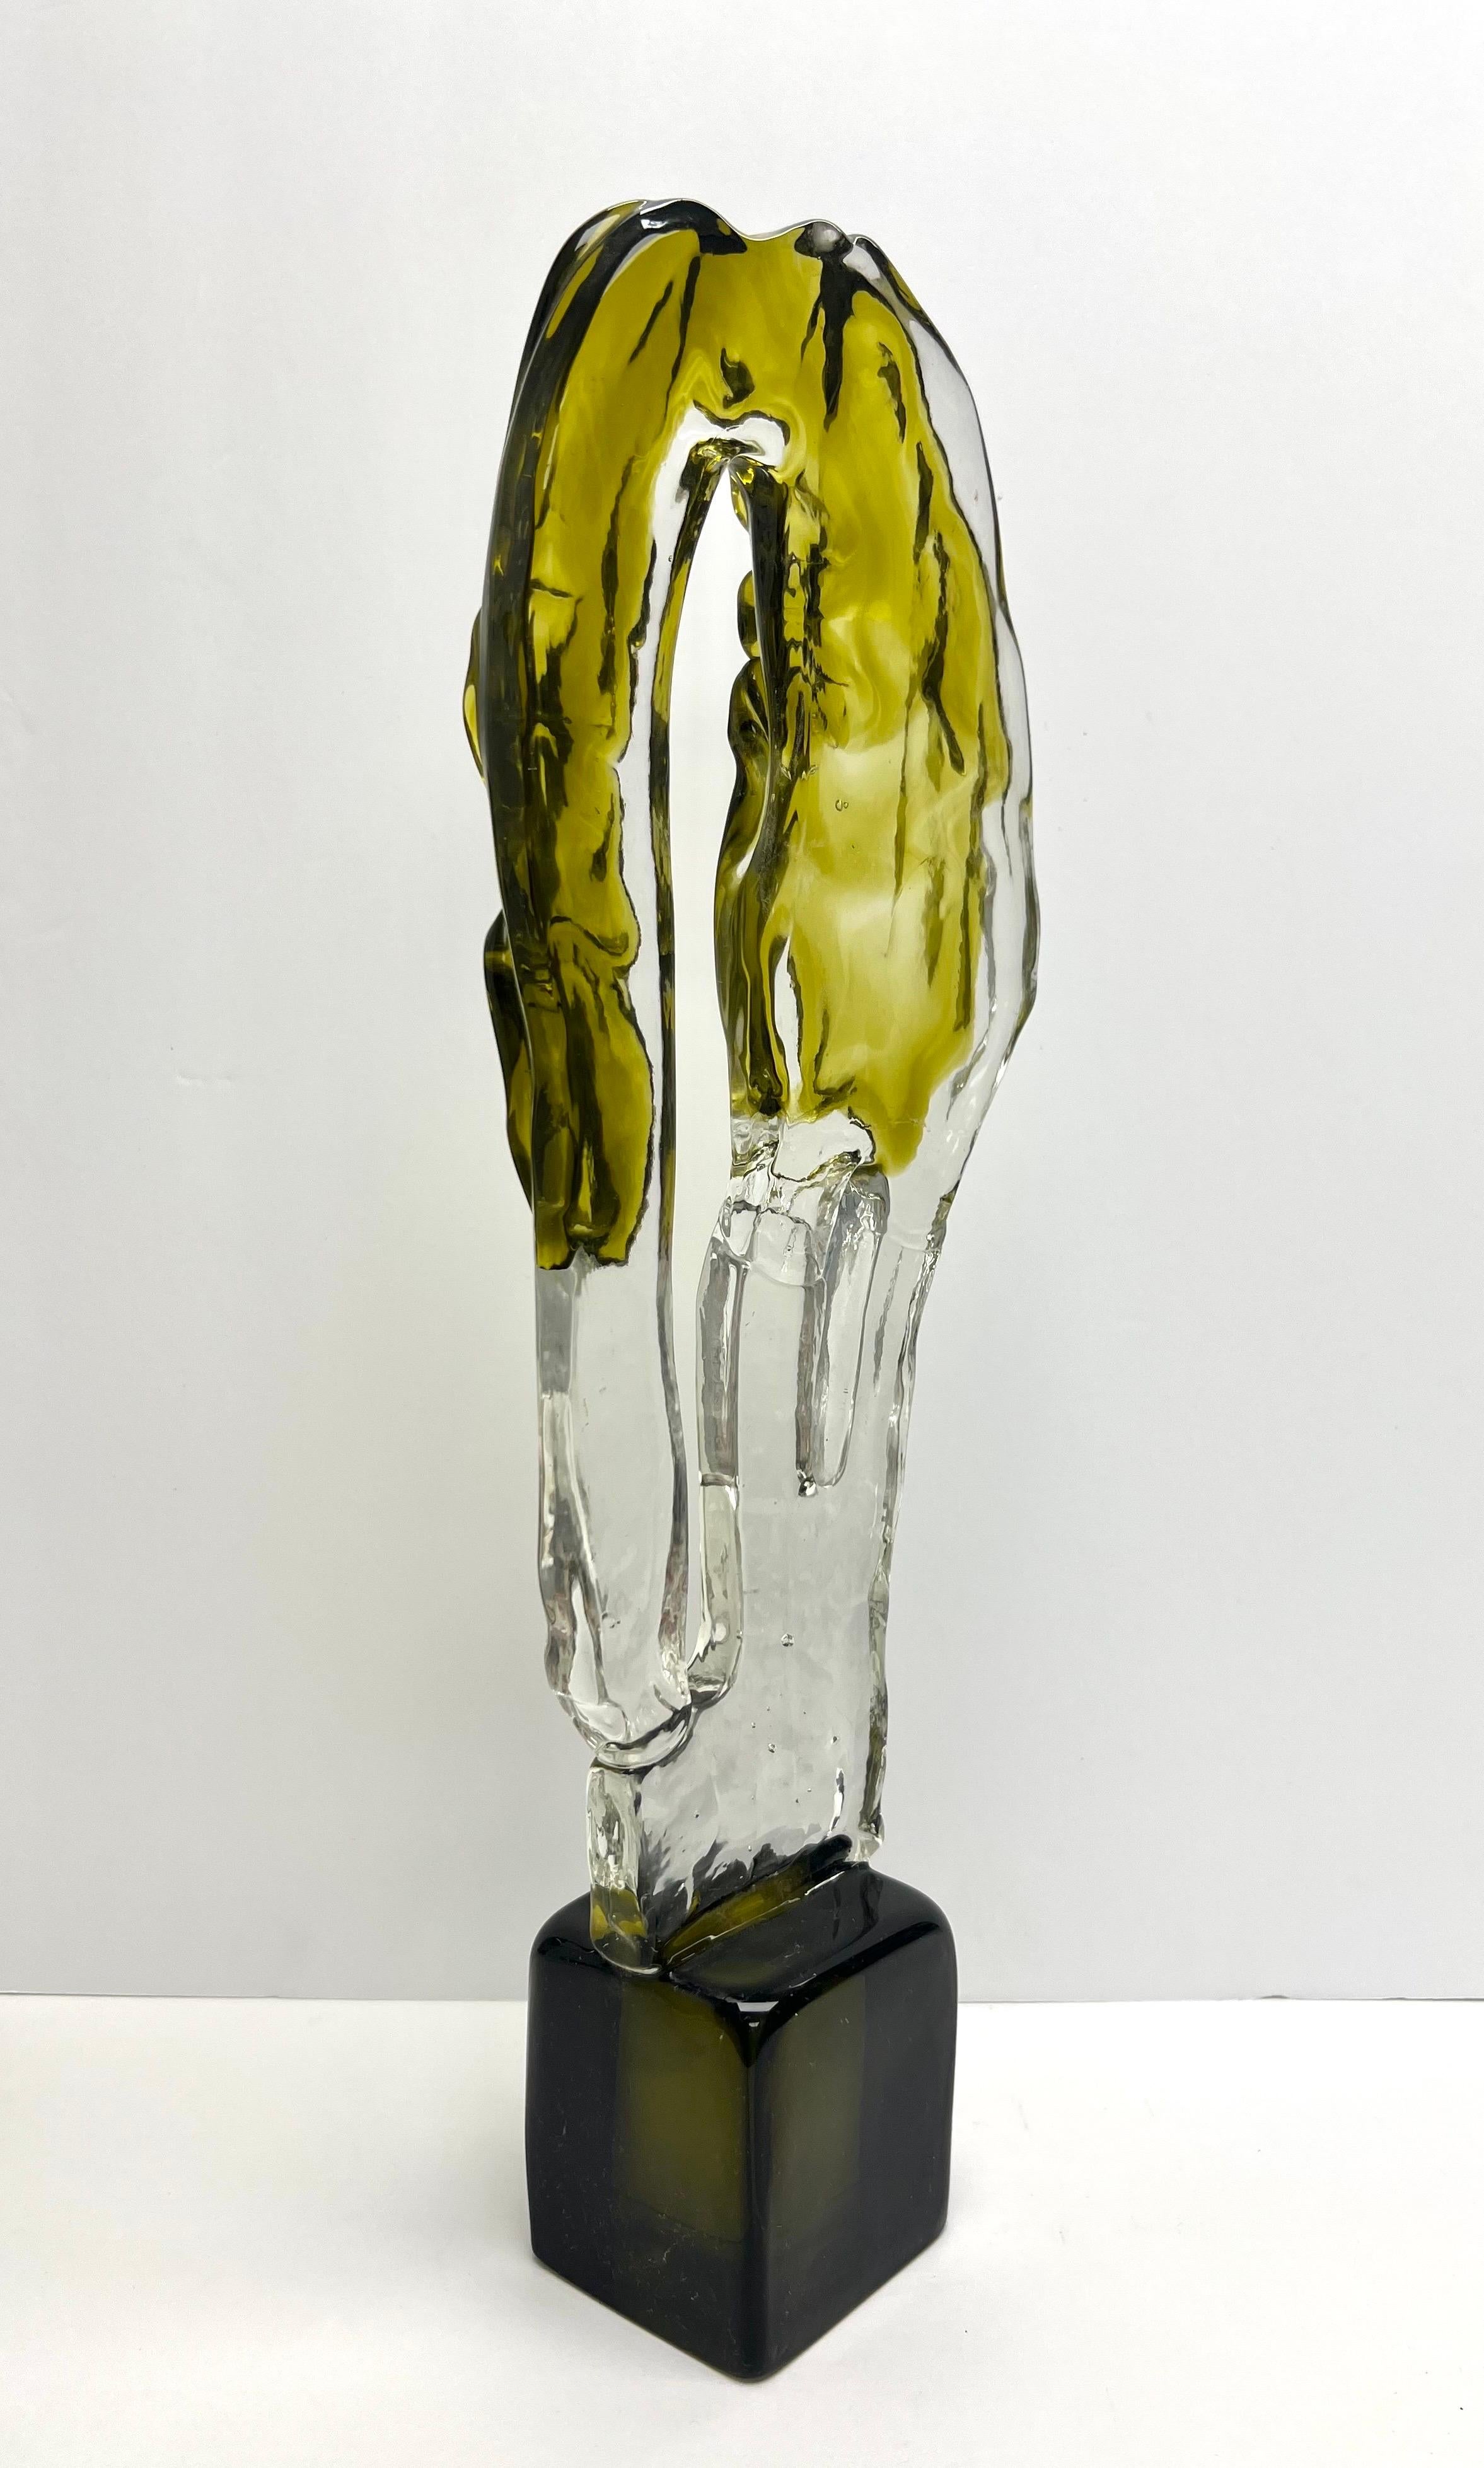 Luciano Gaspari for Salviati Murano Art Glass Sculpture, 1970s For Sale 1